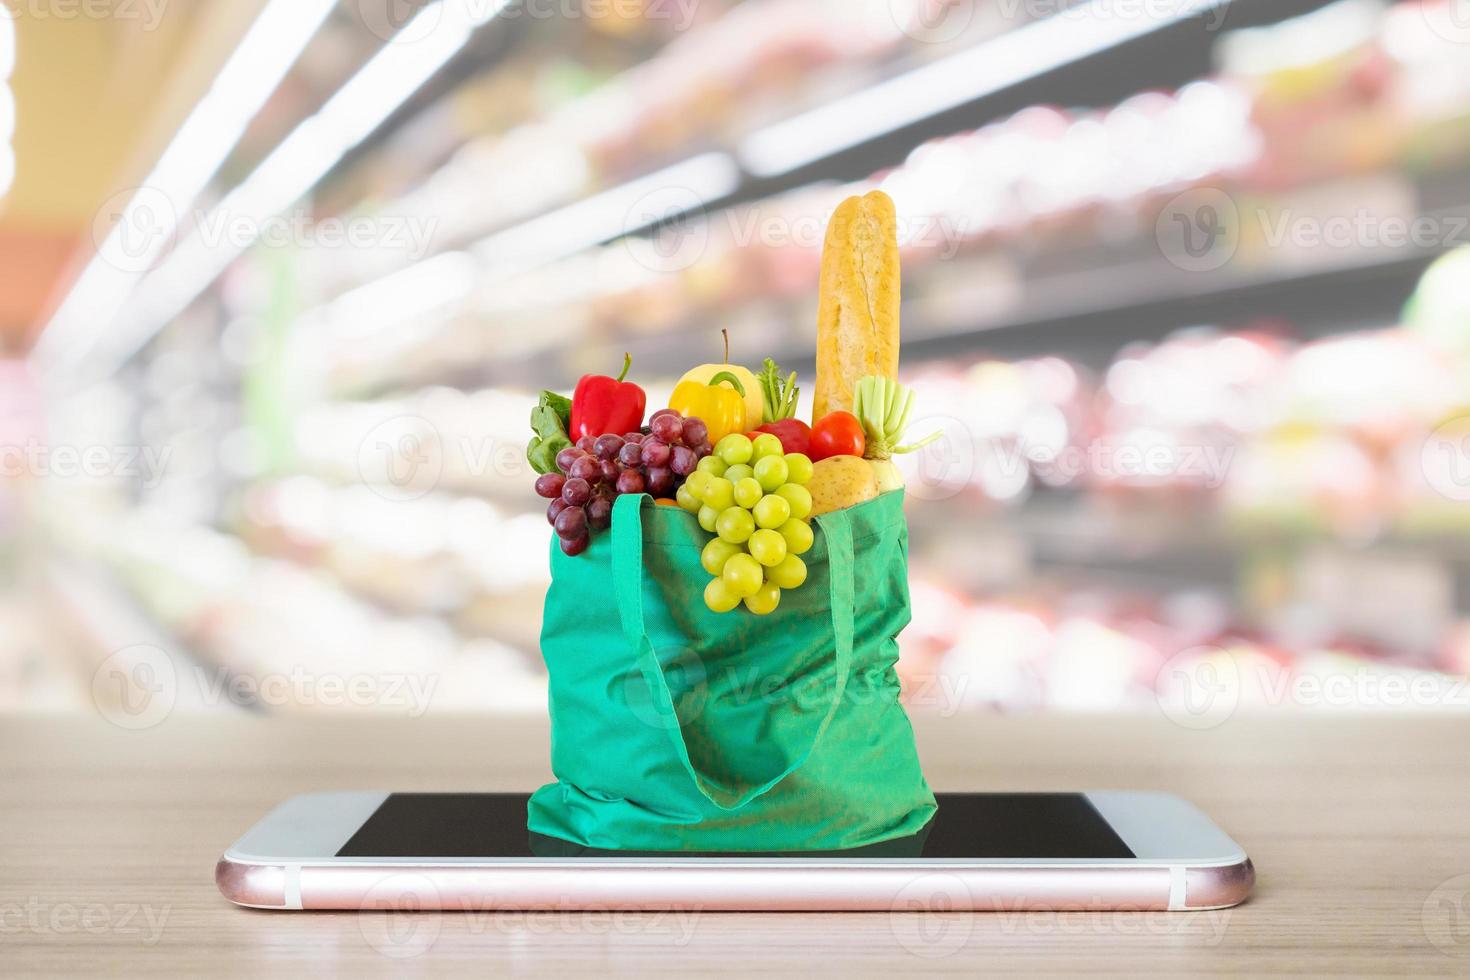 comida fresca y verduras en una bolsa de compras verde en un teléfono inteligente móvil en una mesa de madera con pasillo de supermercado fondo borroso concepto en línea de comestibles foto